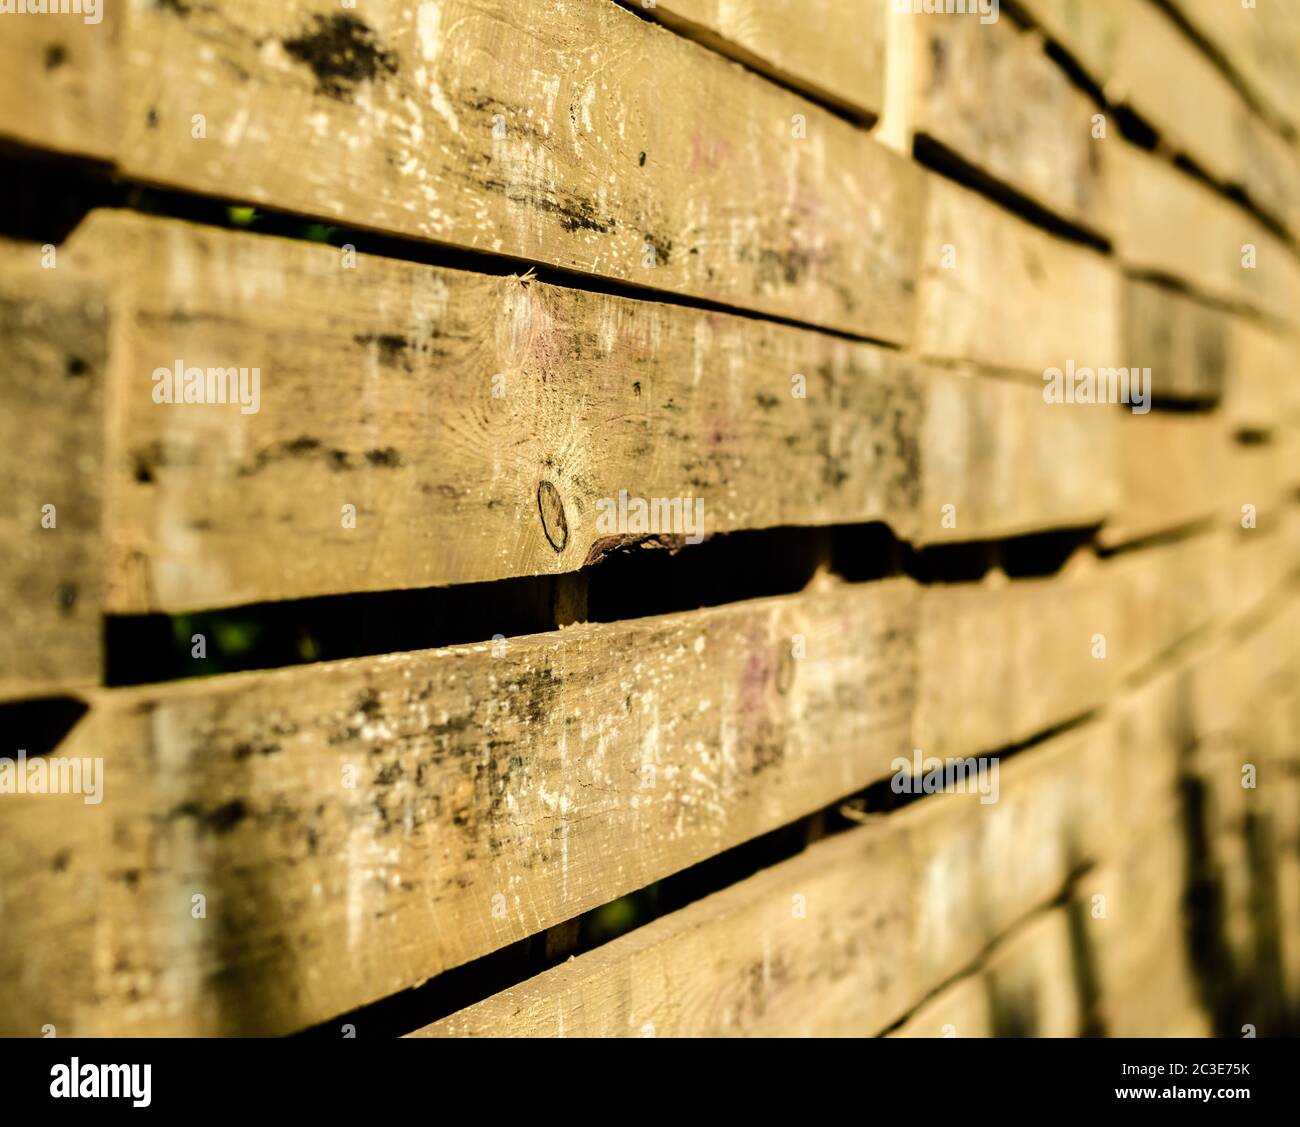 La textura de la superficie de la madera Foto de stock